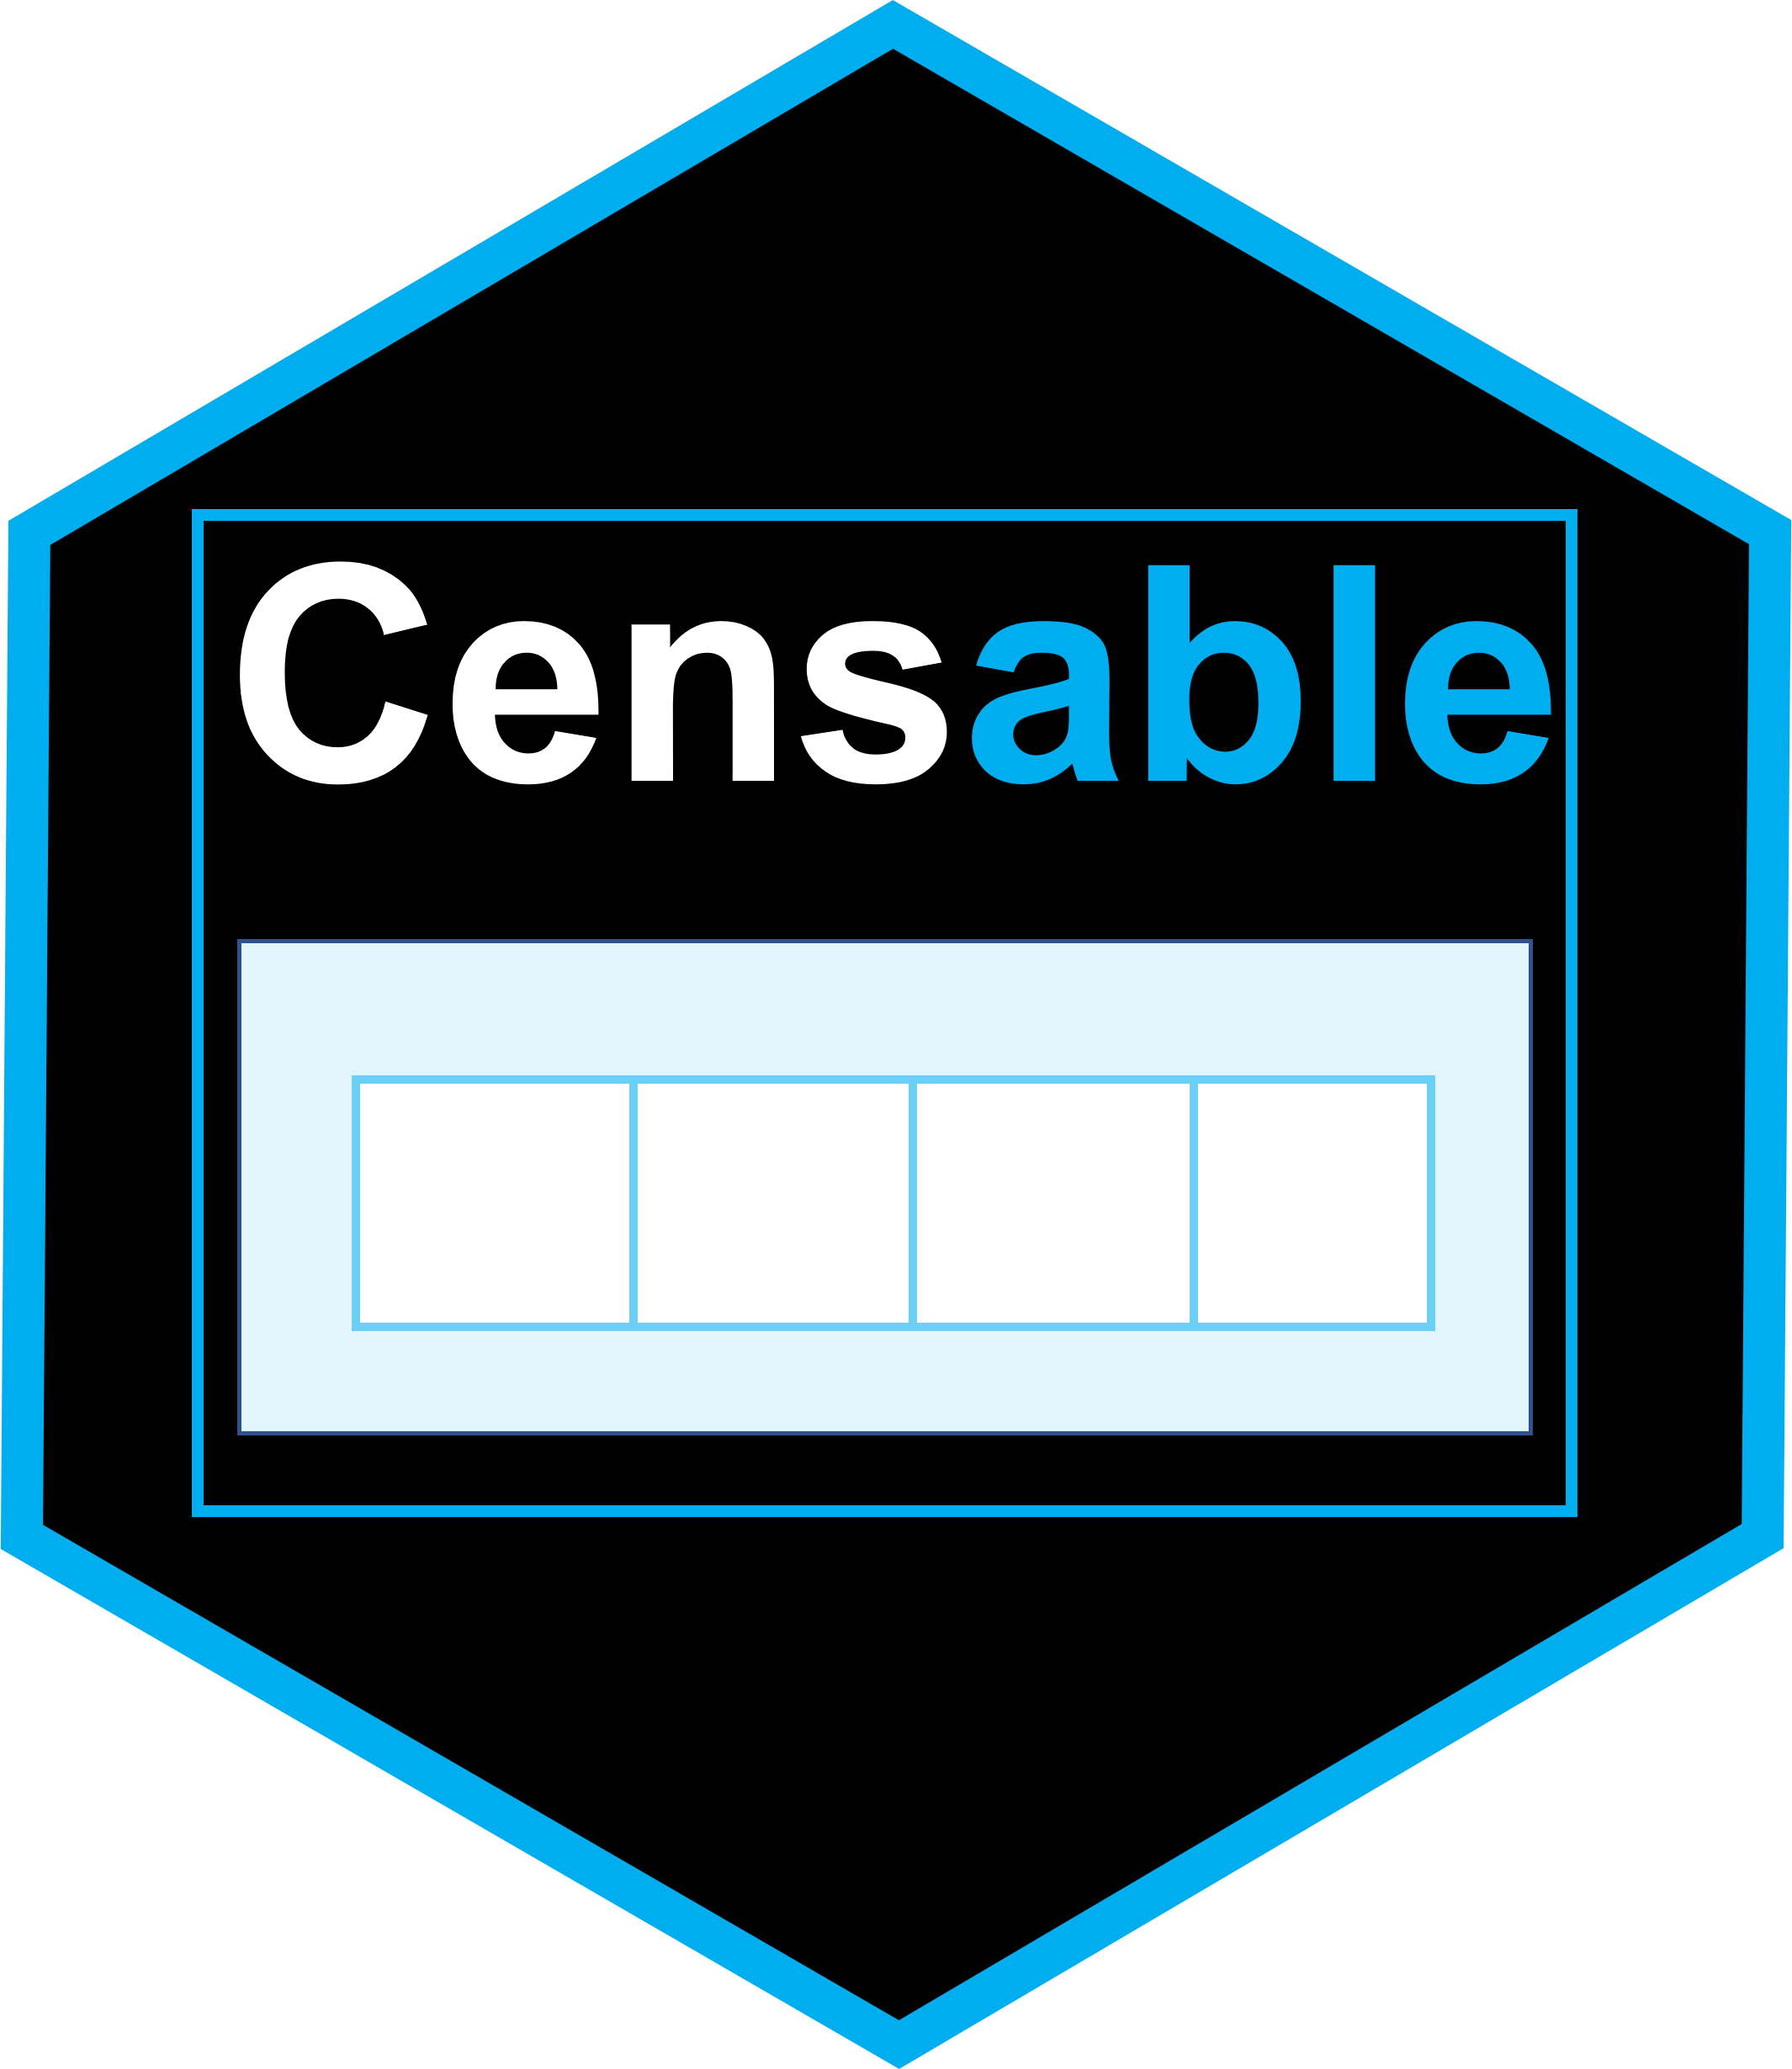 censable hex logo